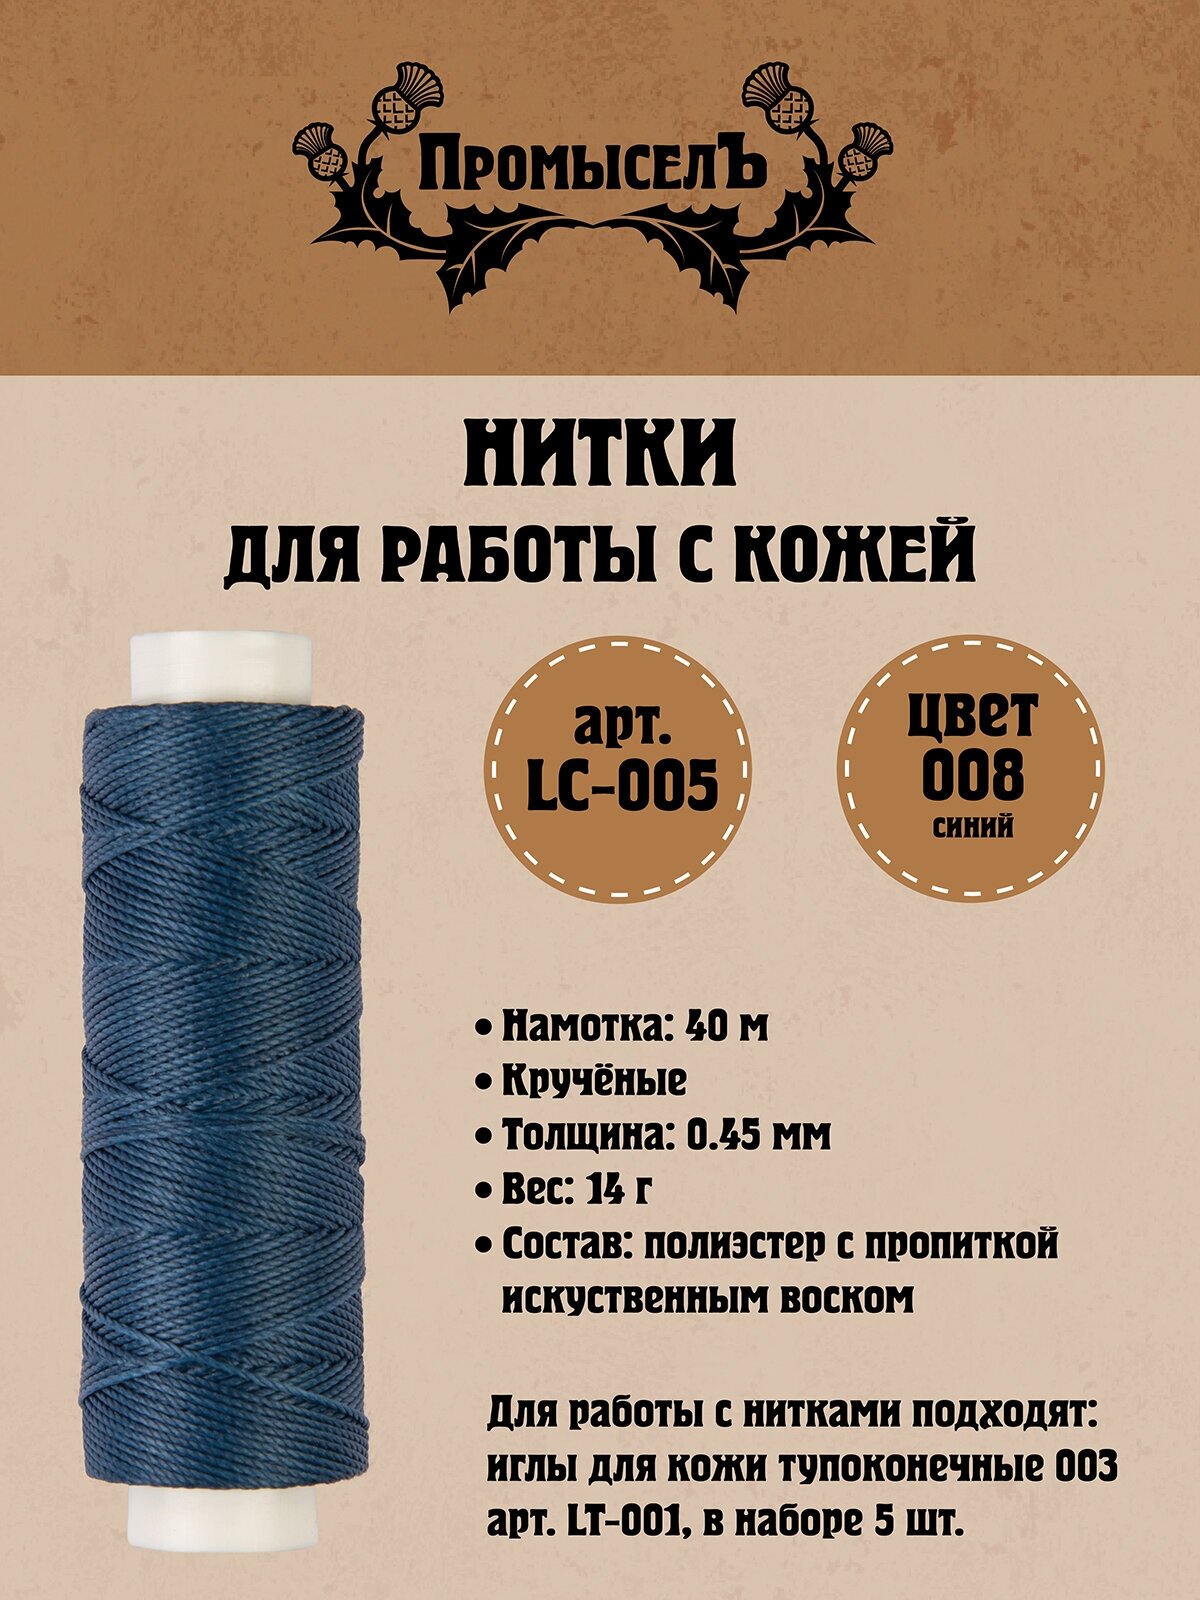 Нитки для кожи "Промысел" вощёные (полиэстер) LC-005 0.45 мм 40 м № 008 синий